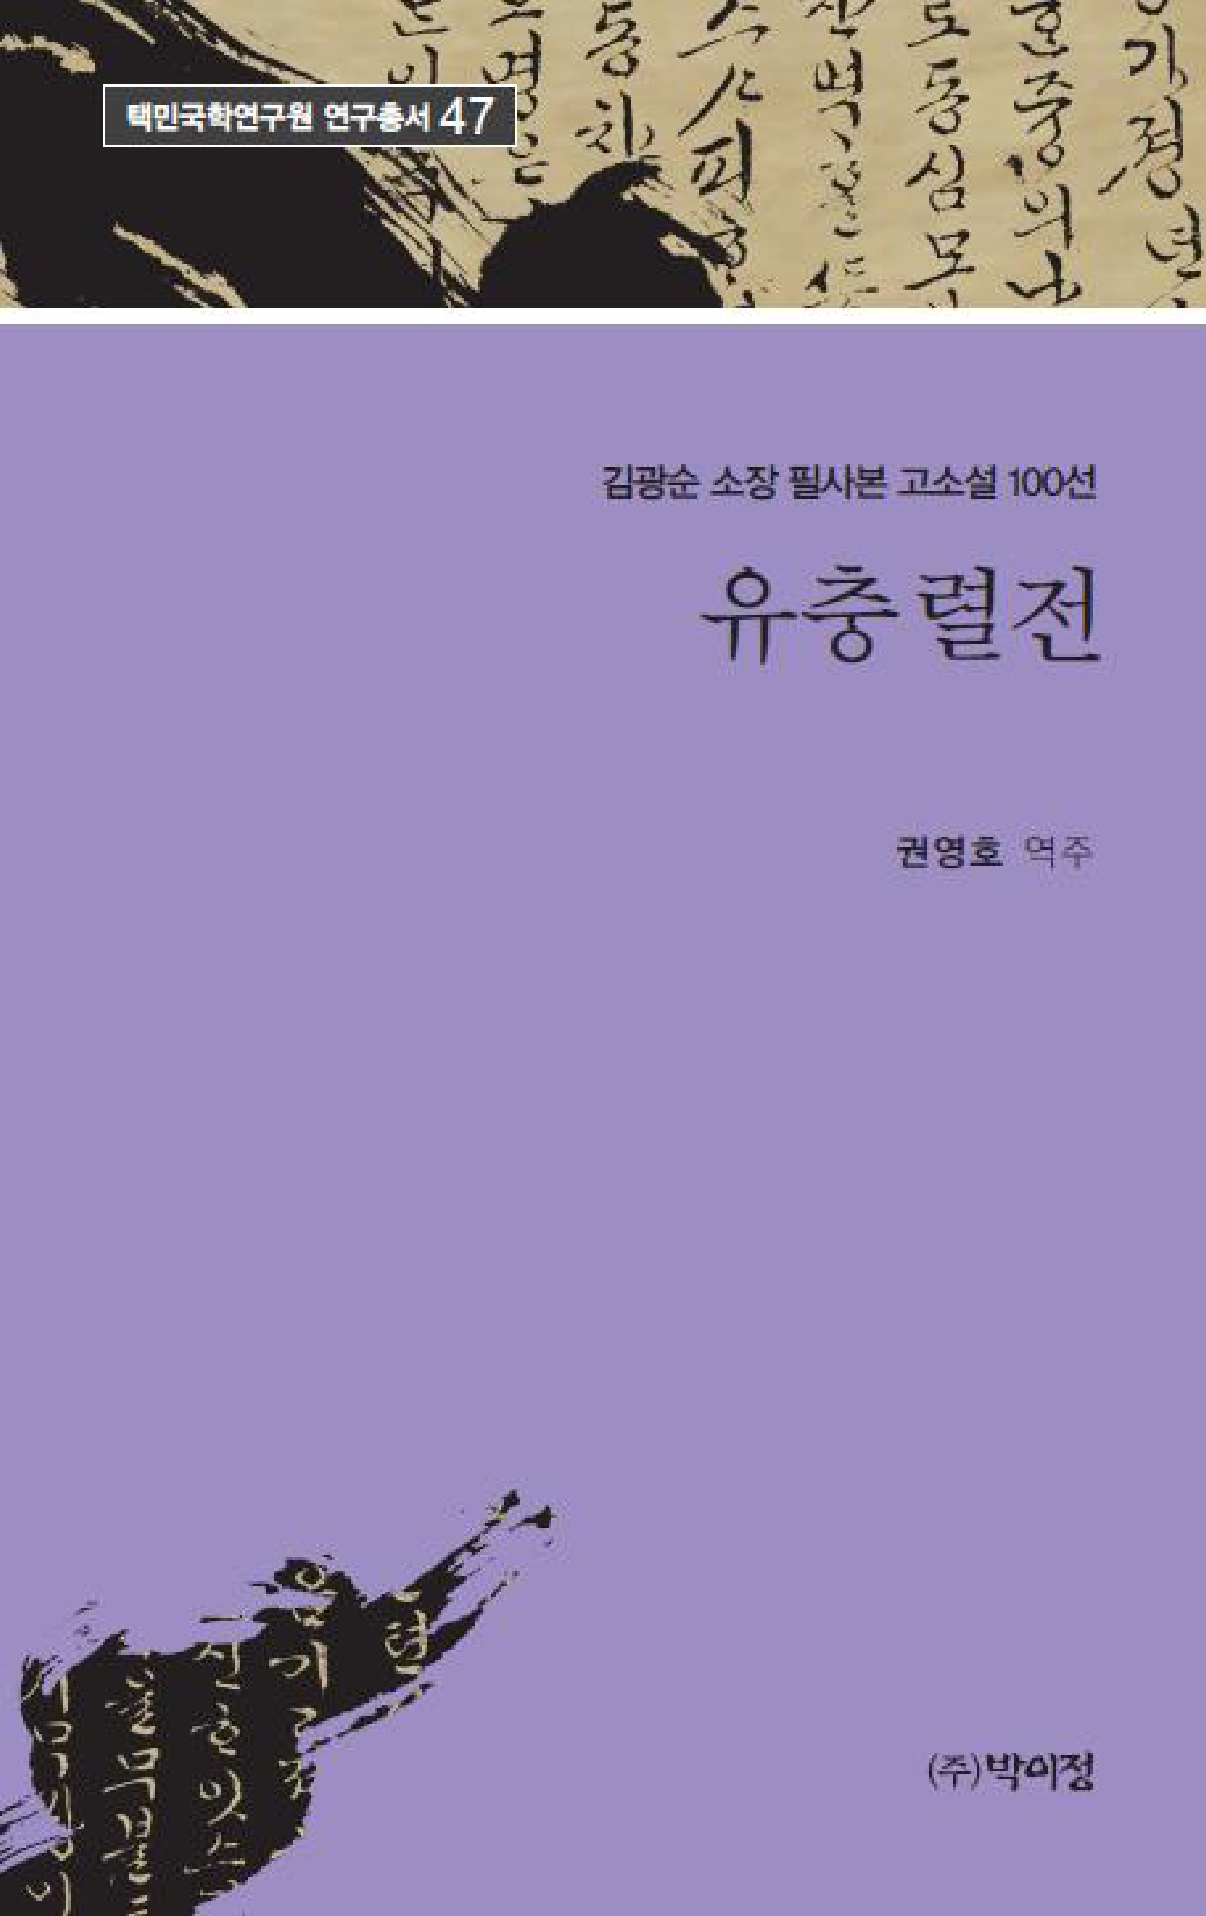 유충렬전 김광순 소장 필사본 고소설 100선